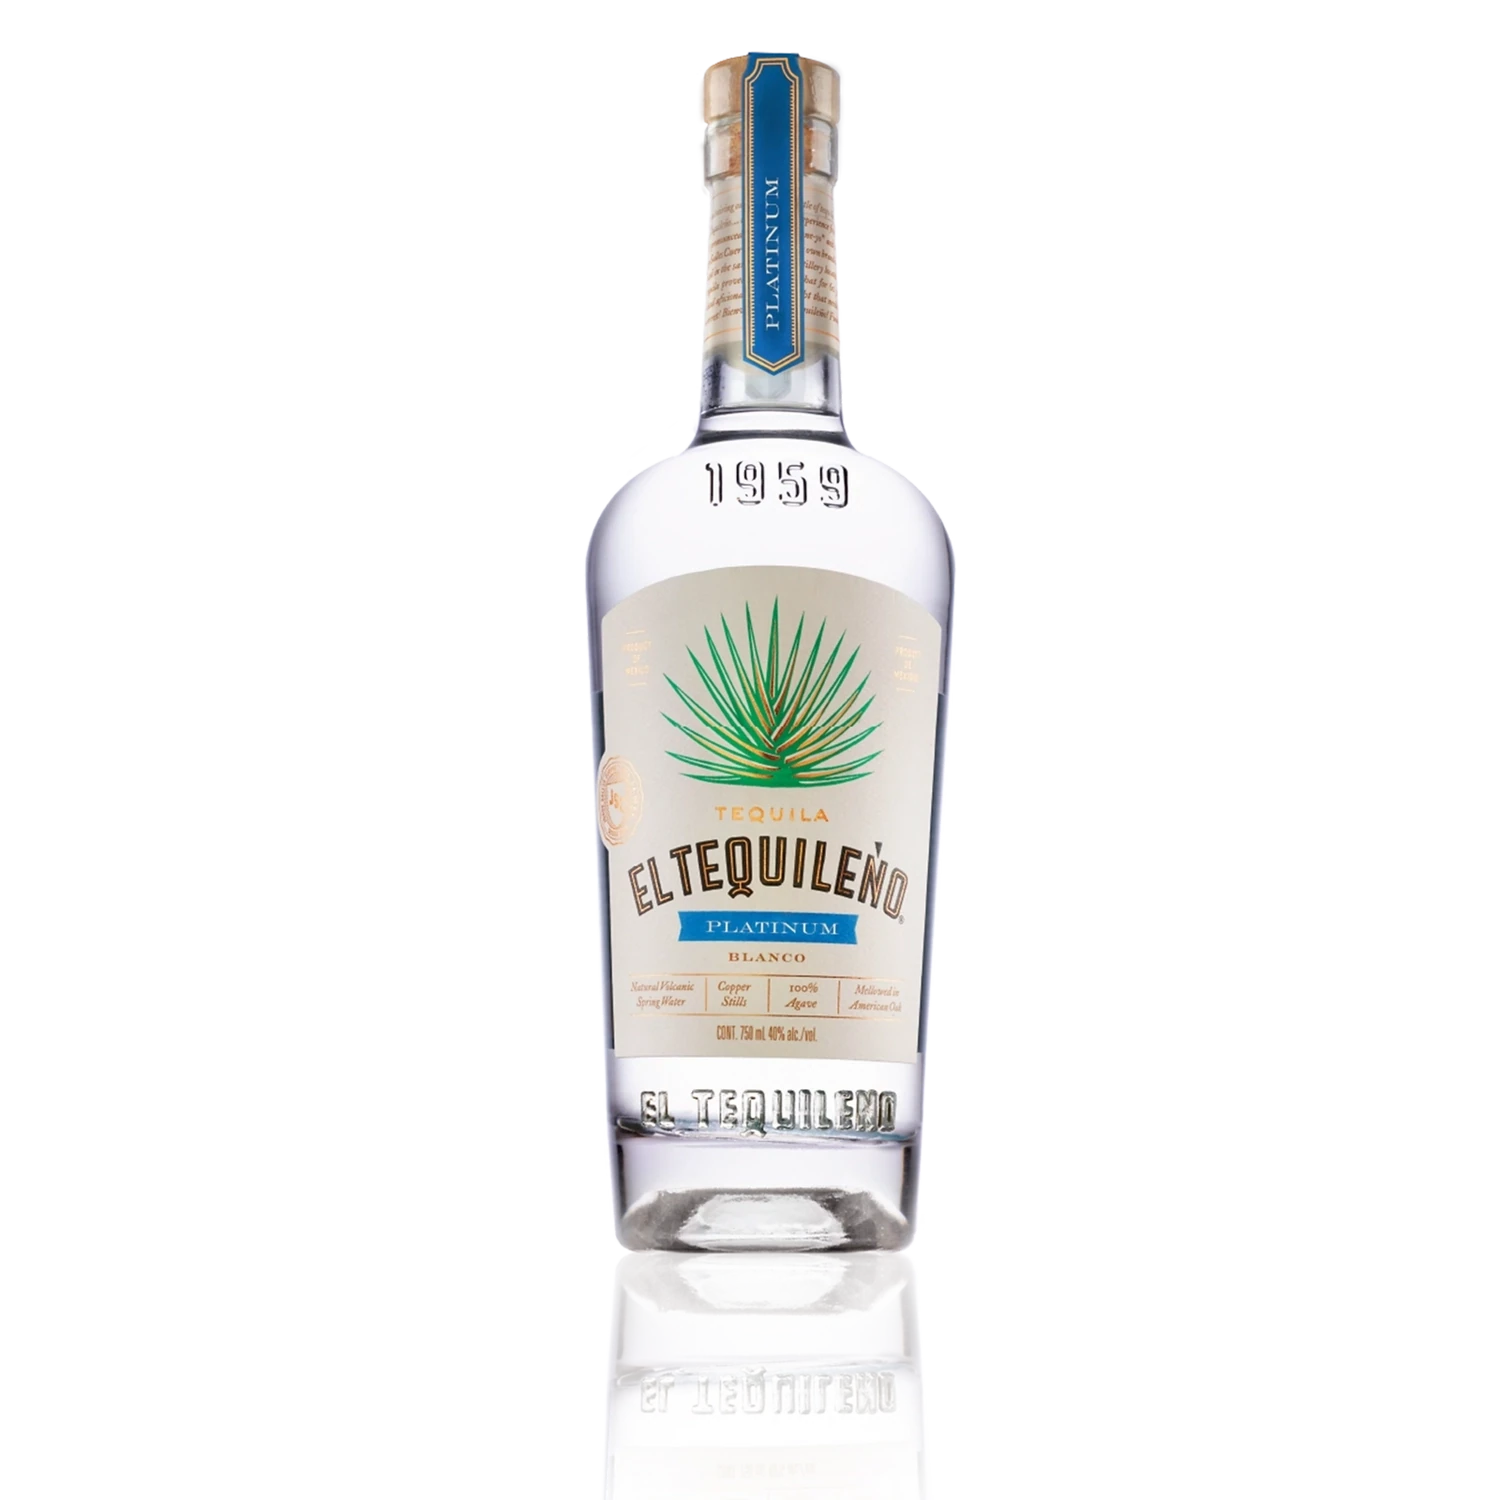 El Tequileño Platinum Blanco Tequila